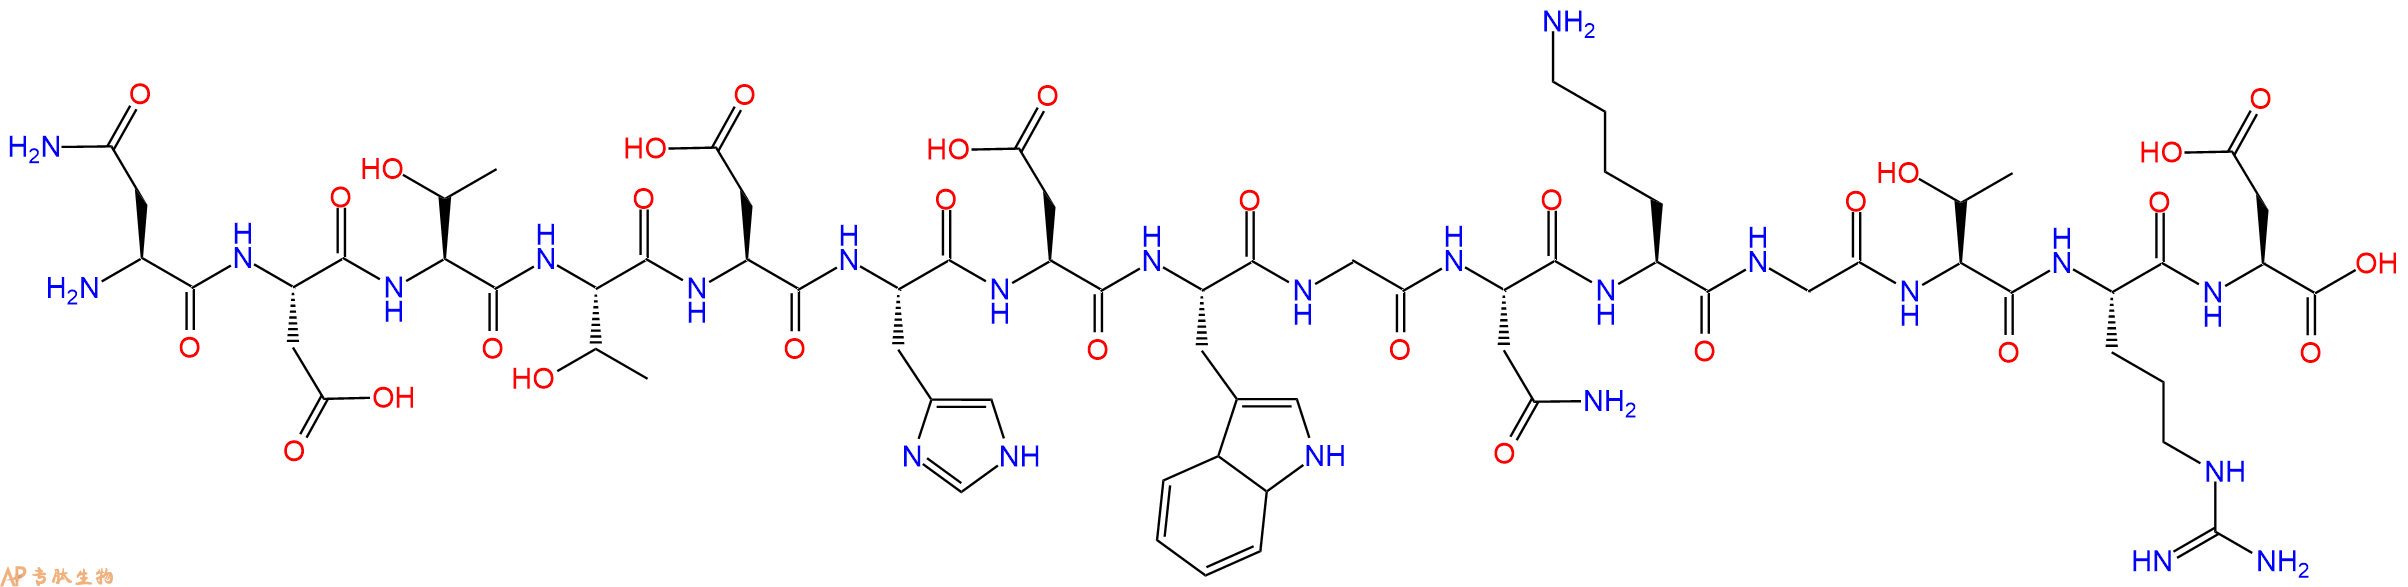 多肽NDTTDHDWGNKGTRD的参数和合成路线|三字母为Asn-Asp-Thr-Thr-Asp-